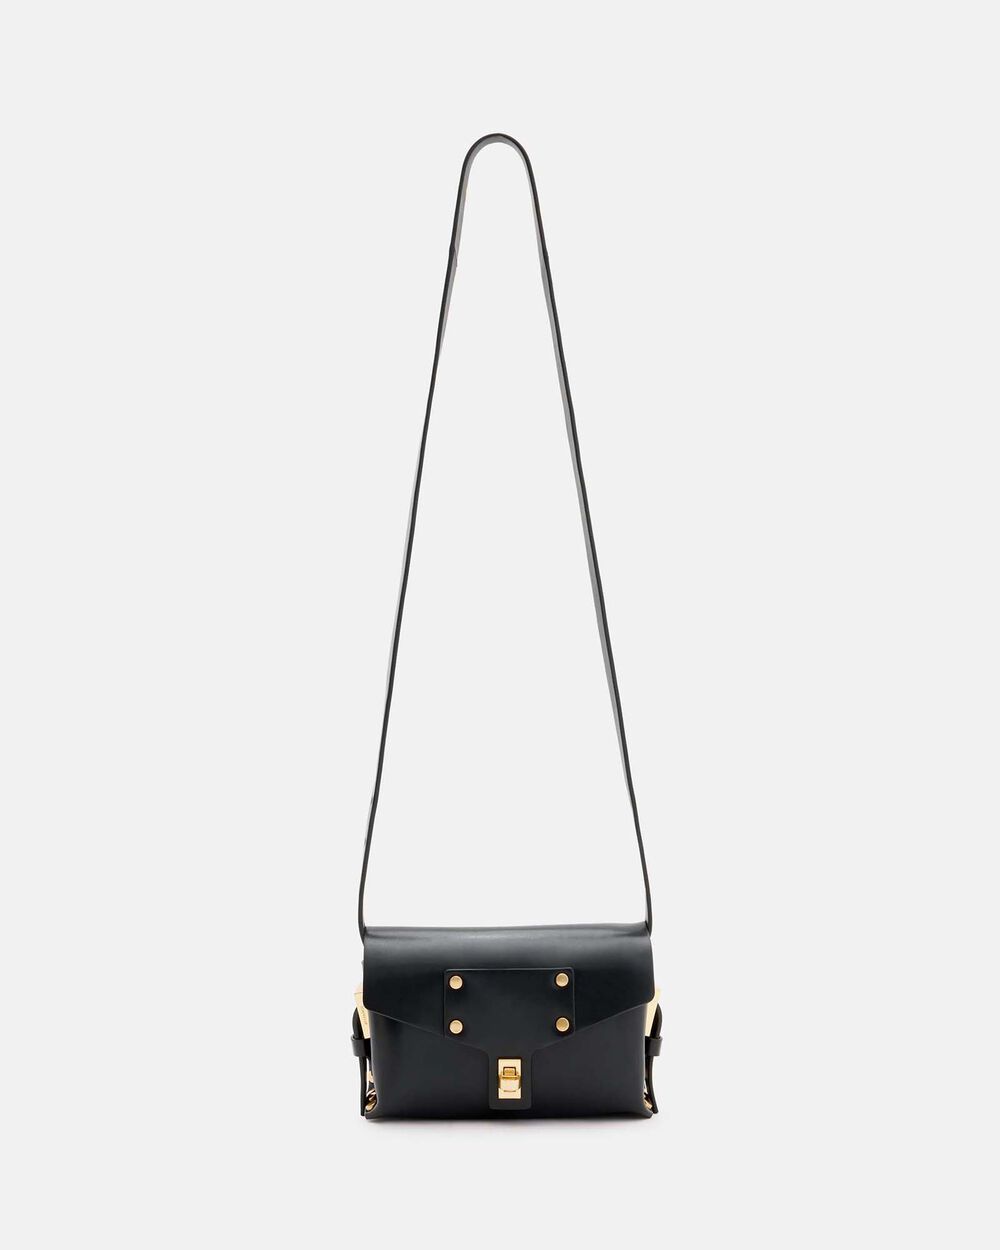 Миниатюрная кожаная сумка через плечо Miro AllSaints, черный фото